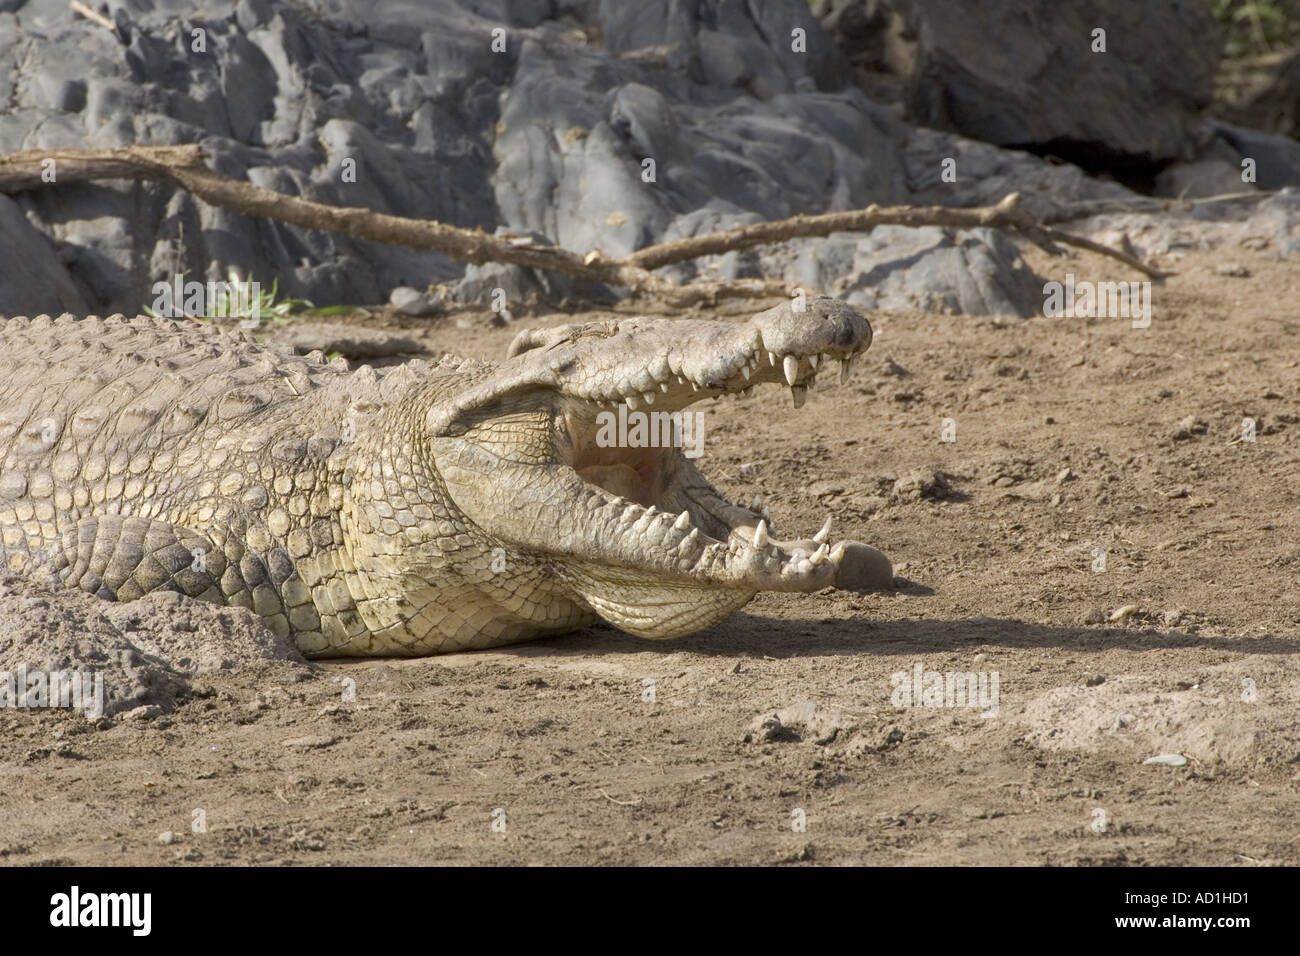 Los dientes de la boca abierta de cocodrilos del Nilo Crocodylus niloticus adulto Foto de stock